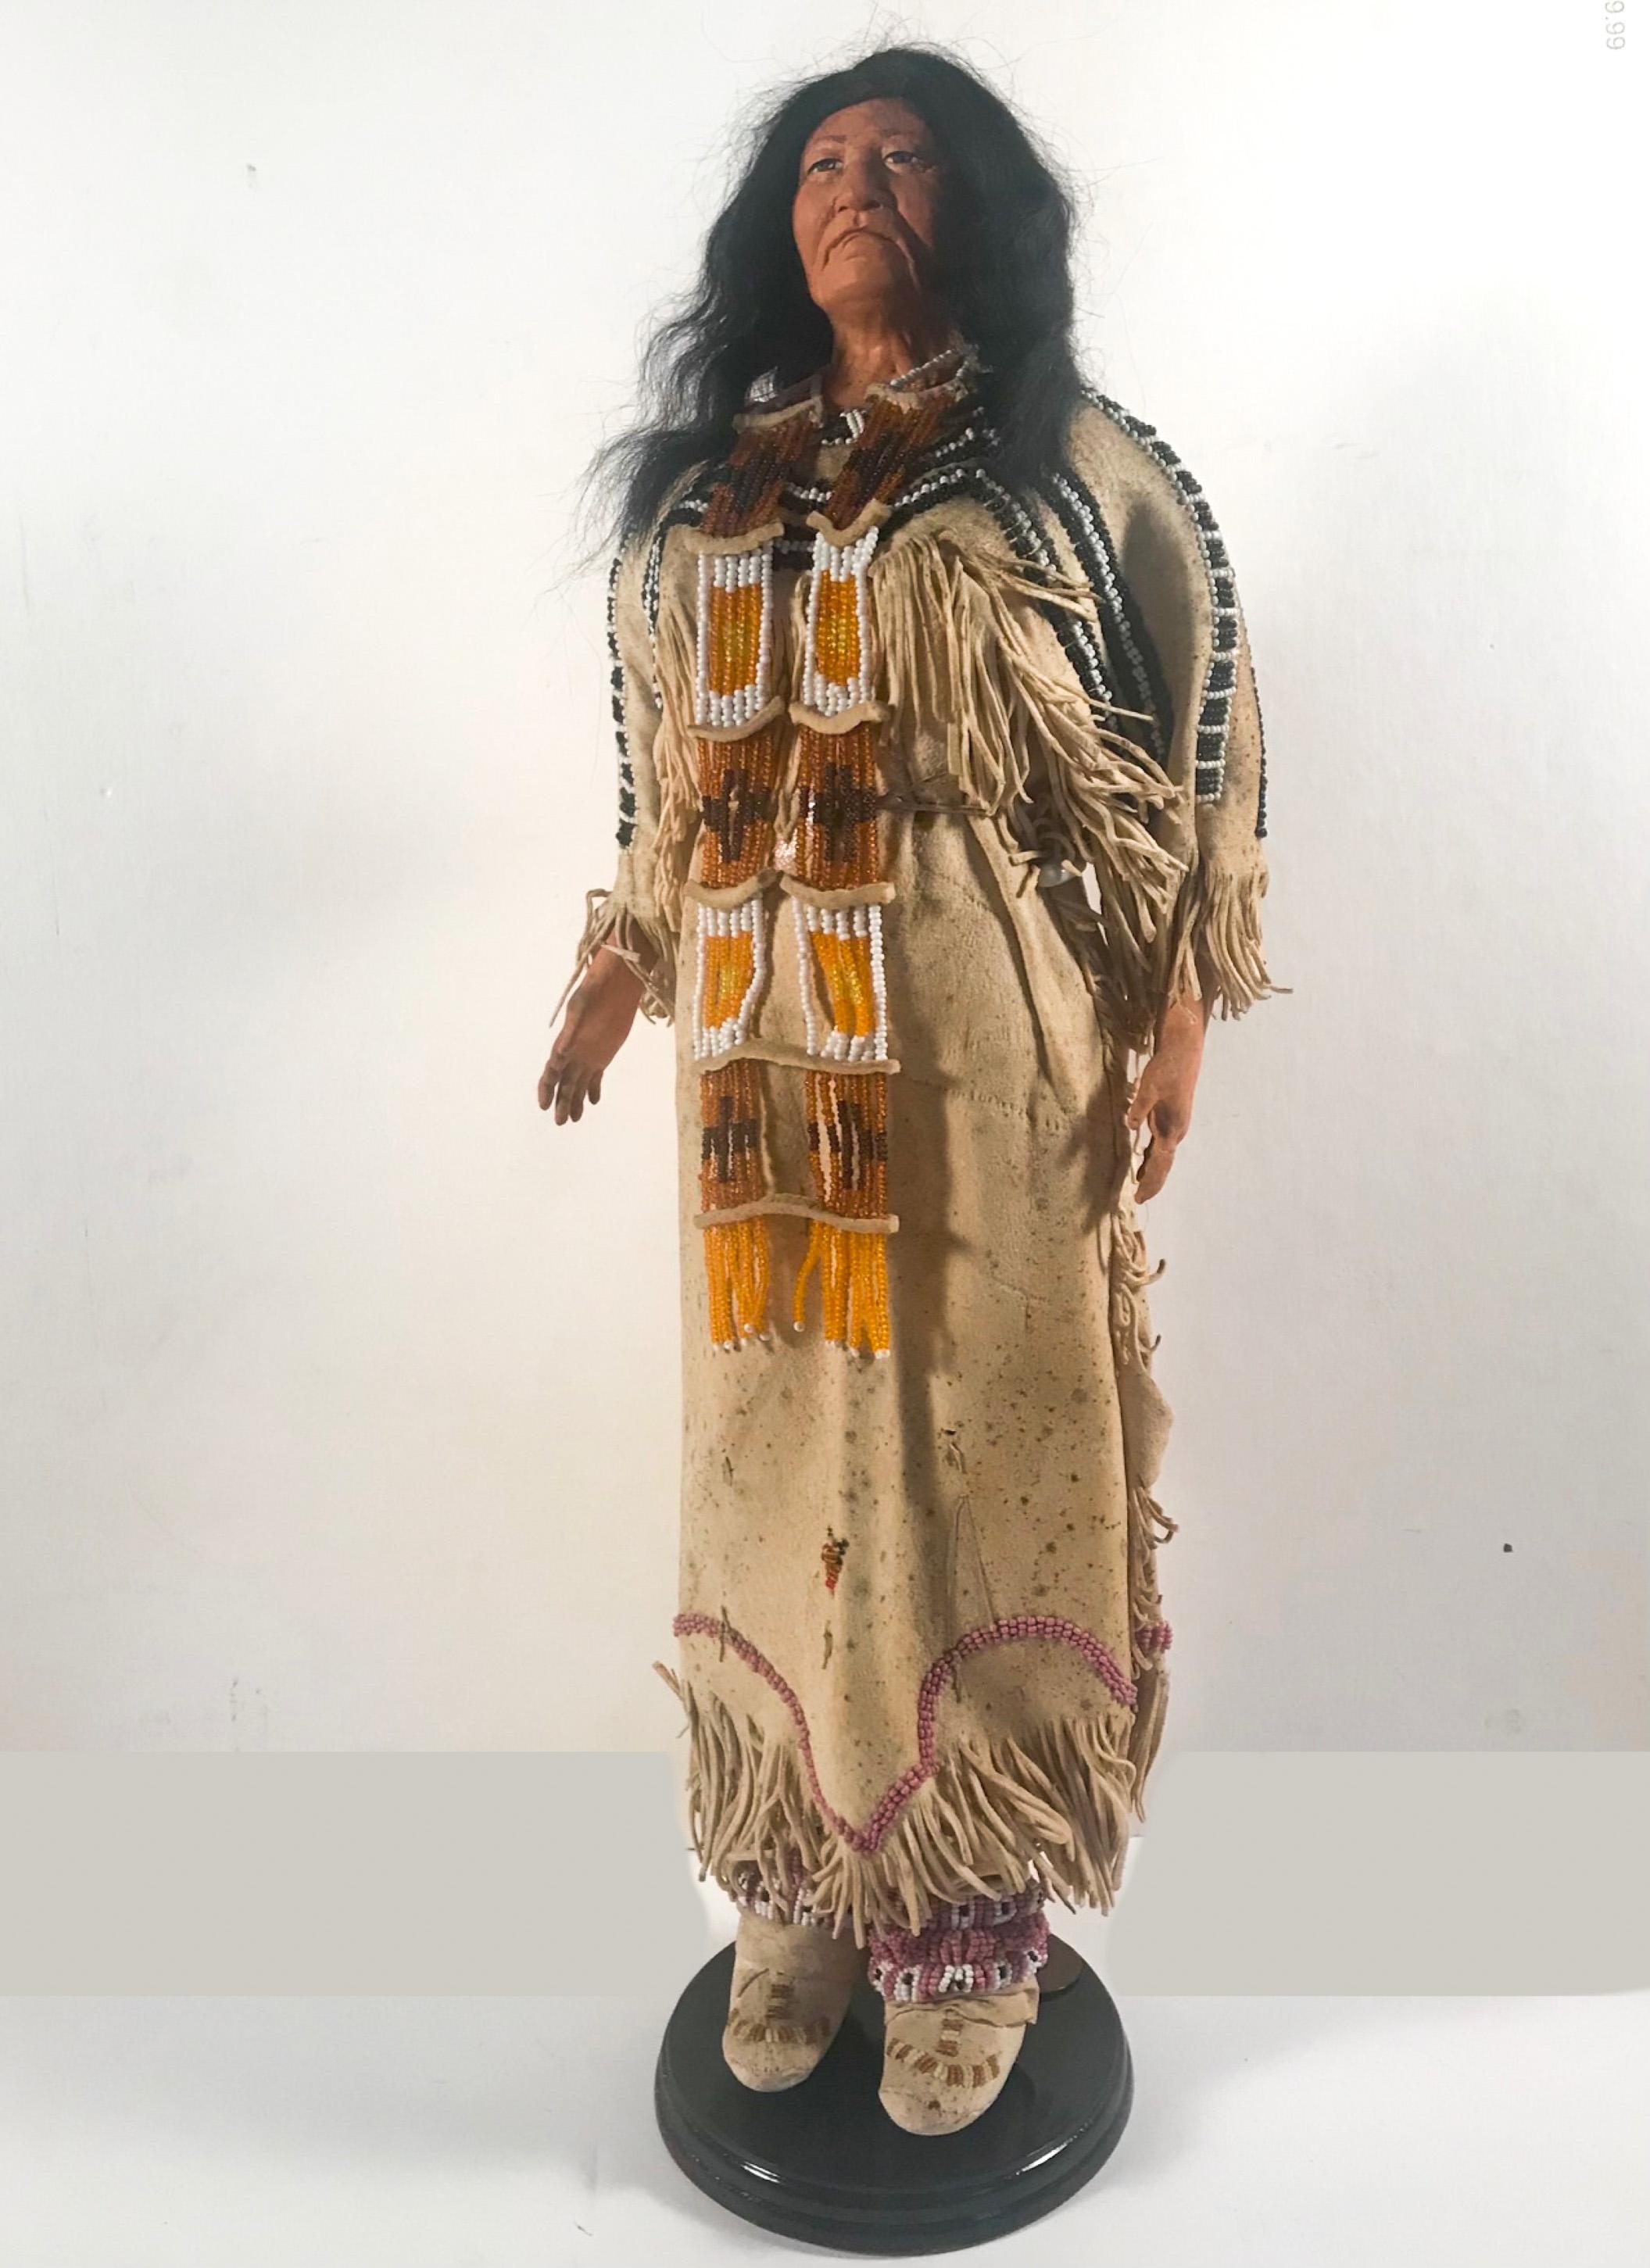 Poupée indienne d'Amérique du Nord avec robe de mariée traditionnelle Lakota Sioux Cherokee avec perles, pièce unique

Il s'agit d'une poupée adulte authentiquement amérindienne, fabriquée aux États-Unis. Elle a un visage et des mains en argile